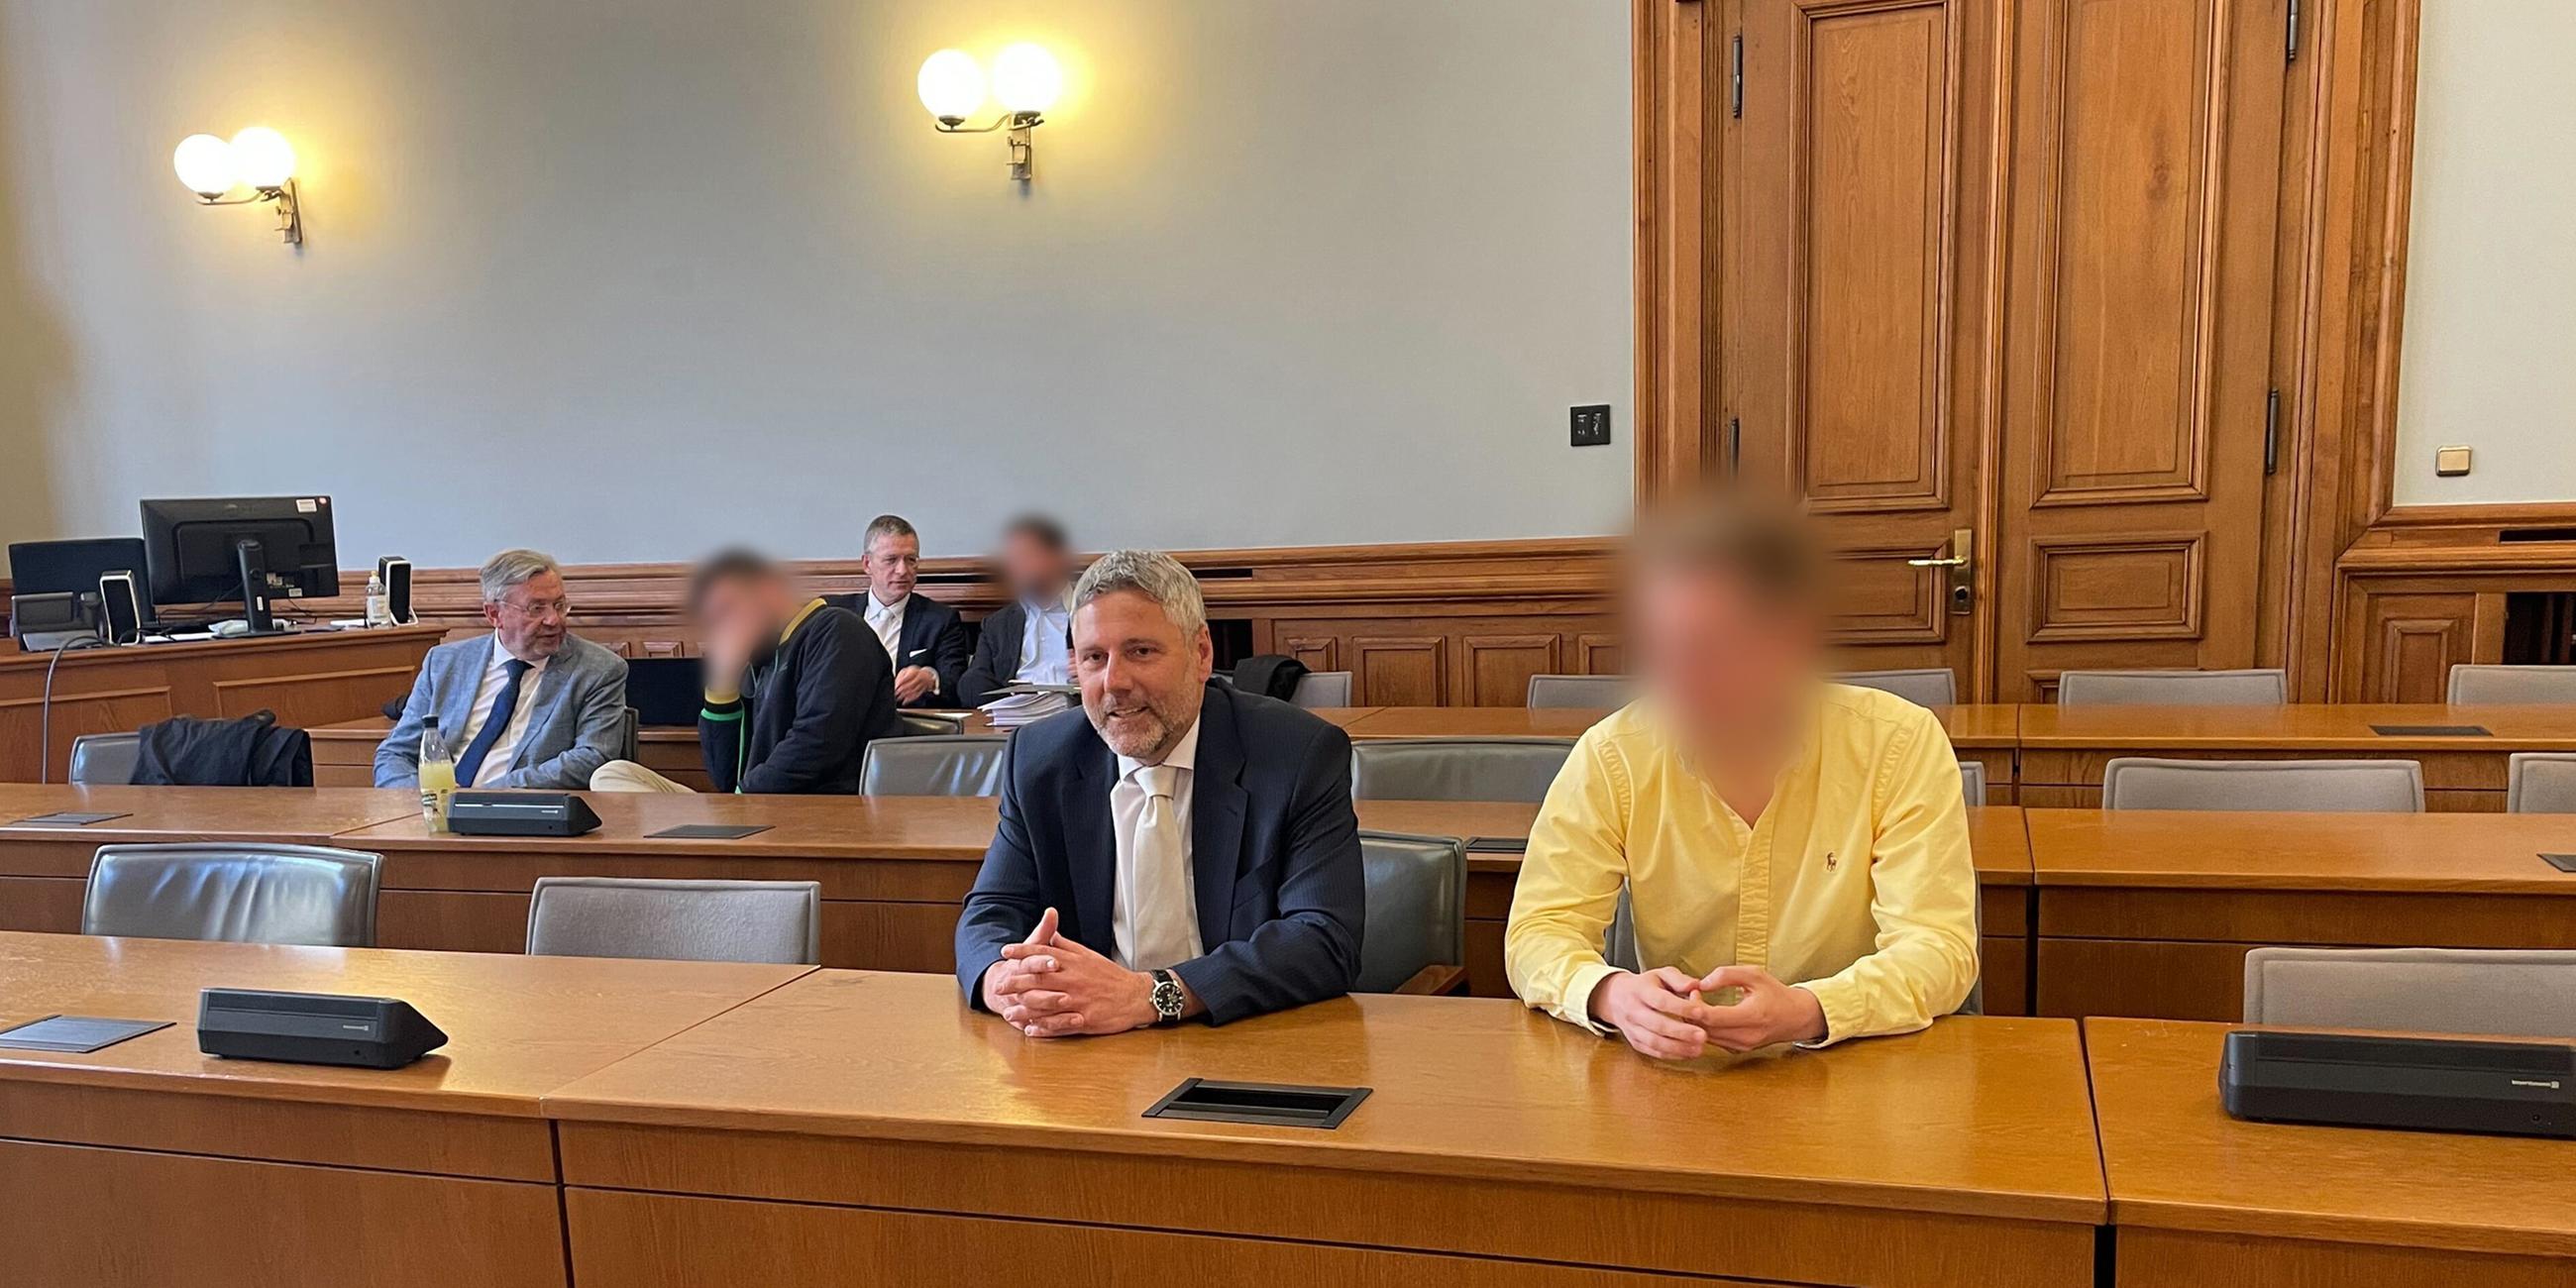  Drei der vier Angeklagten im "Kinderzimmer-Dealer"-Prozess sitzen neben ihren Anwälten in einem Saal vom Landgericht Leipzig. 